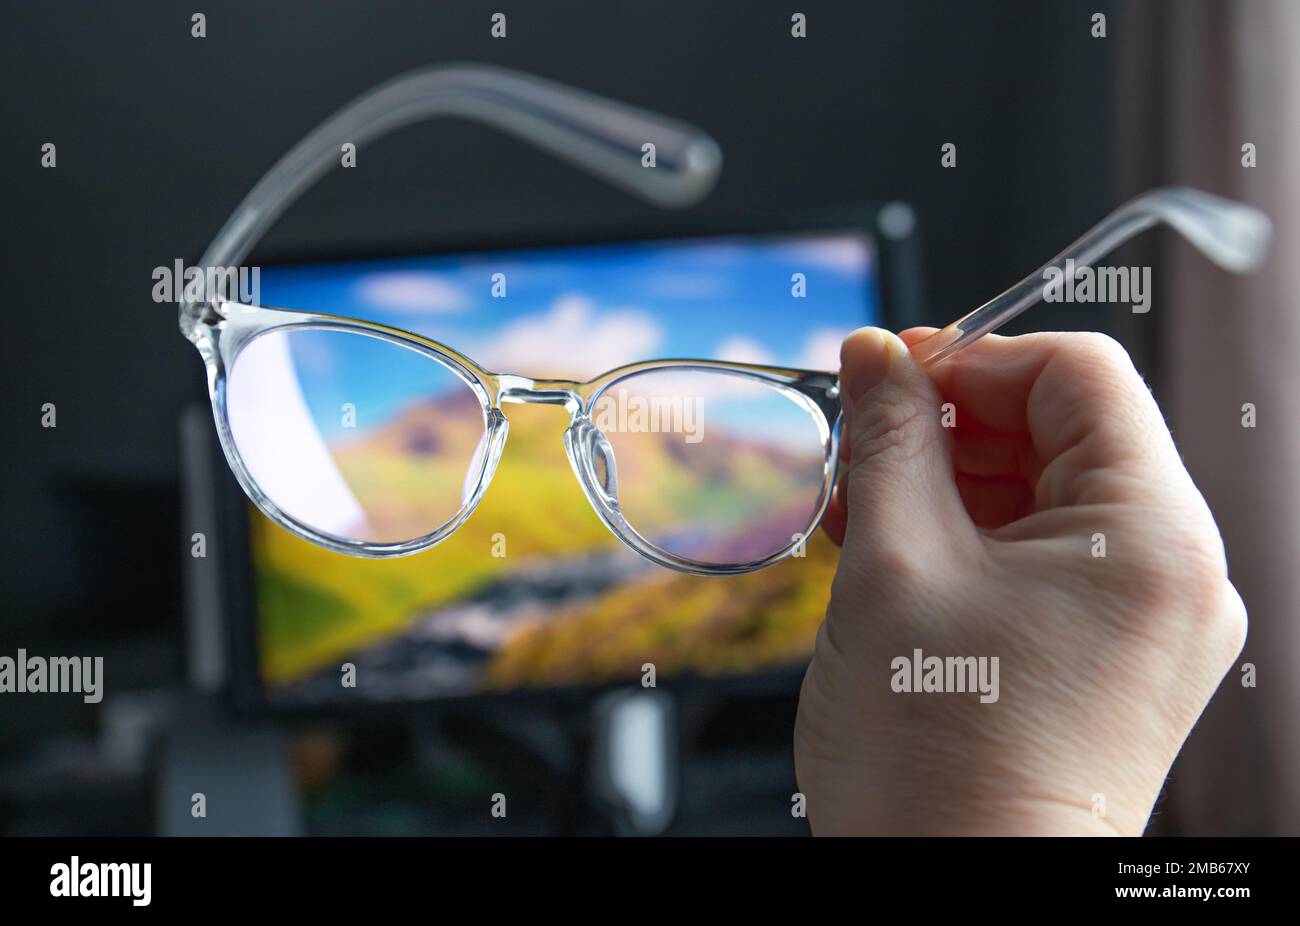 Selektiver Fokus auf transparente, klare, blaue Computerbrillen und einen Computerbildschirm, der im Hintergrund zu Hause oder im Büro leuchtet. Blaue Lichtbrille. Stockfoto